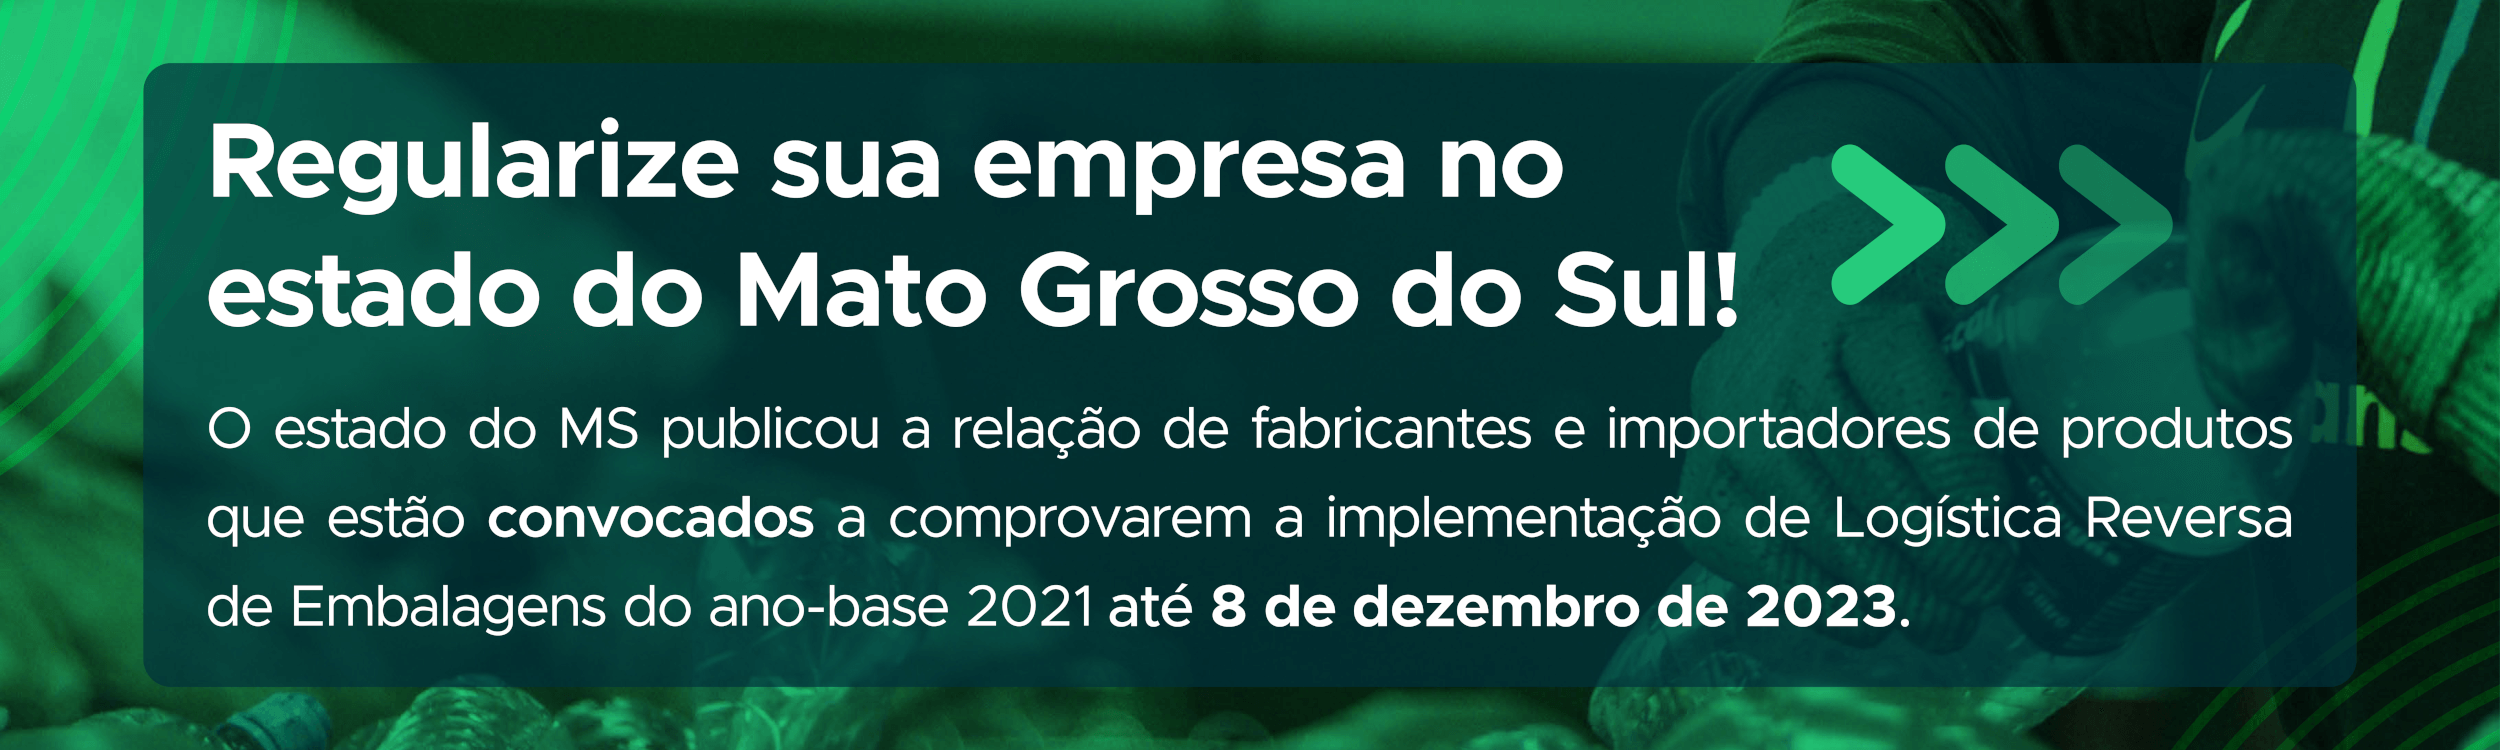 Regularize sua empresa no estado do Mato Grosso do Sul!